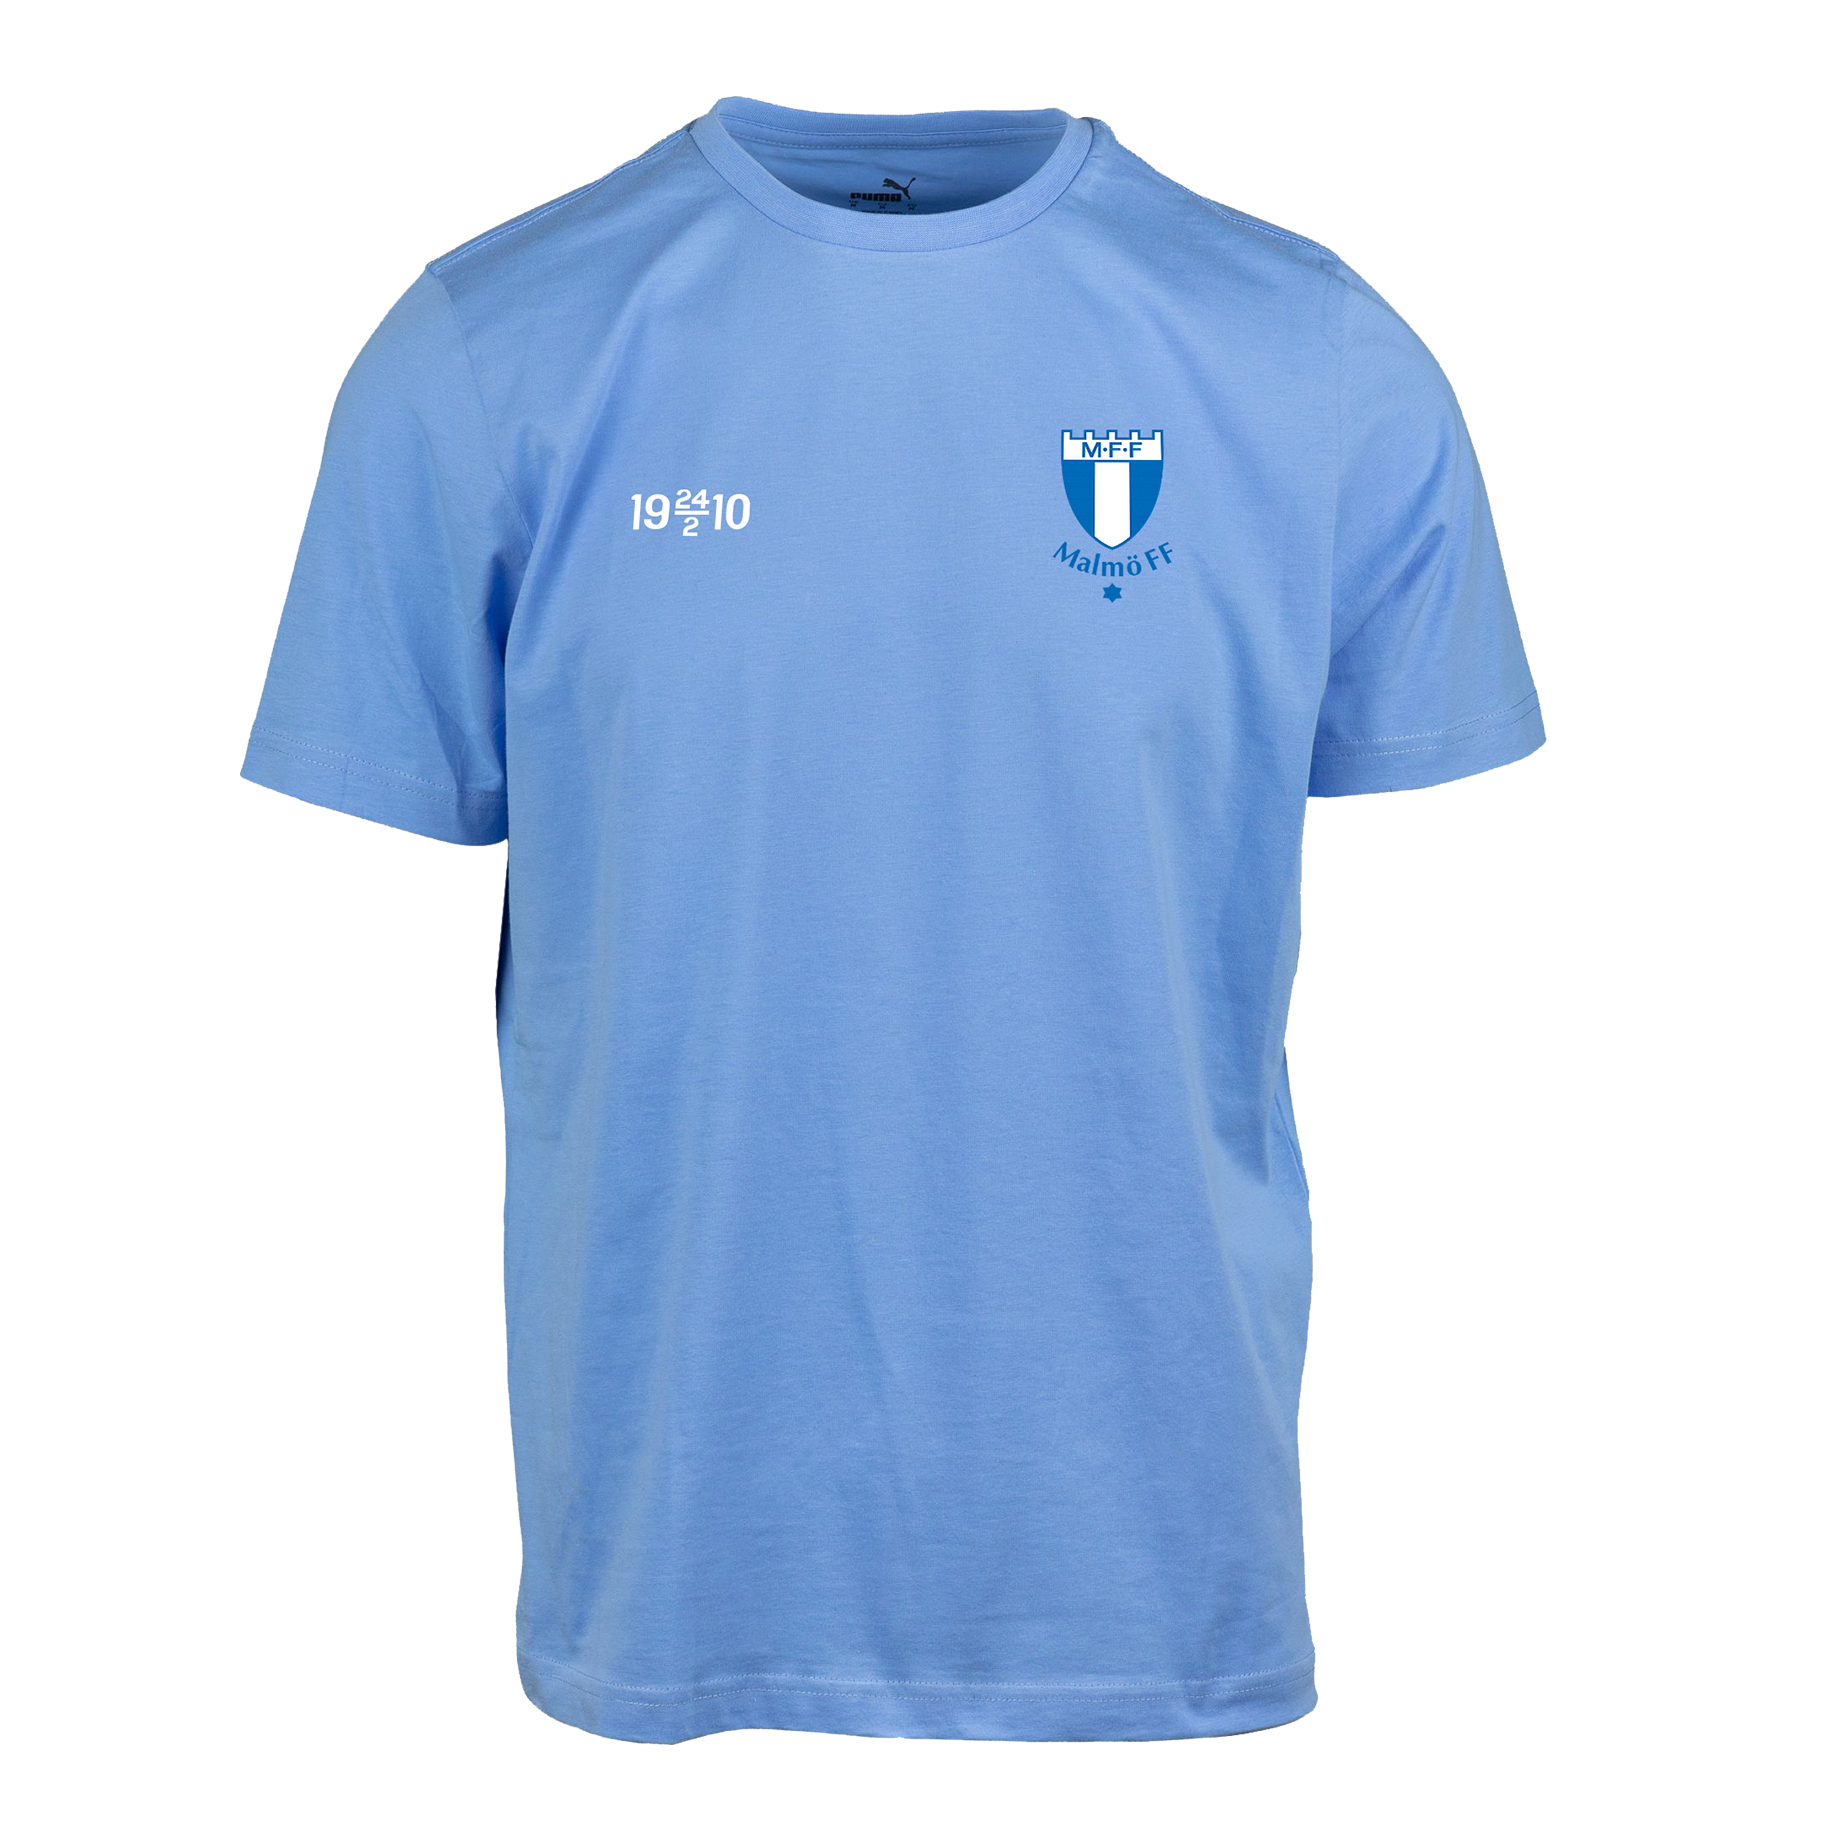 Puma t-shirt ljusblå 1910